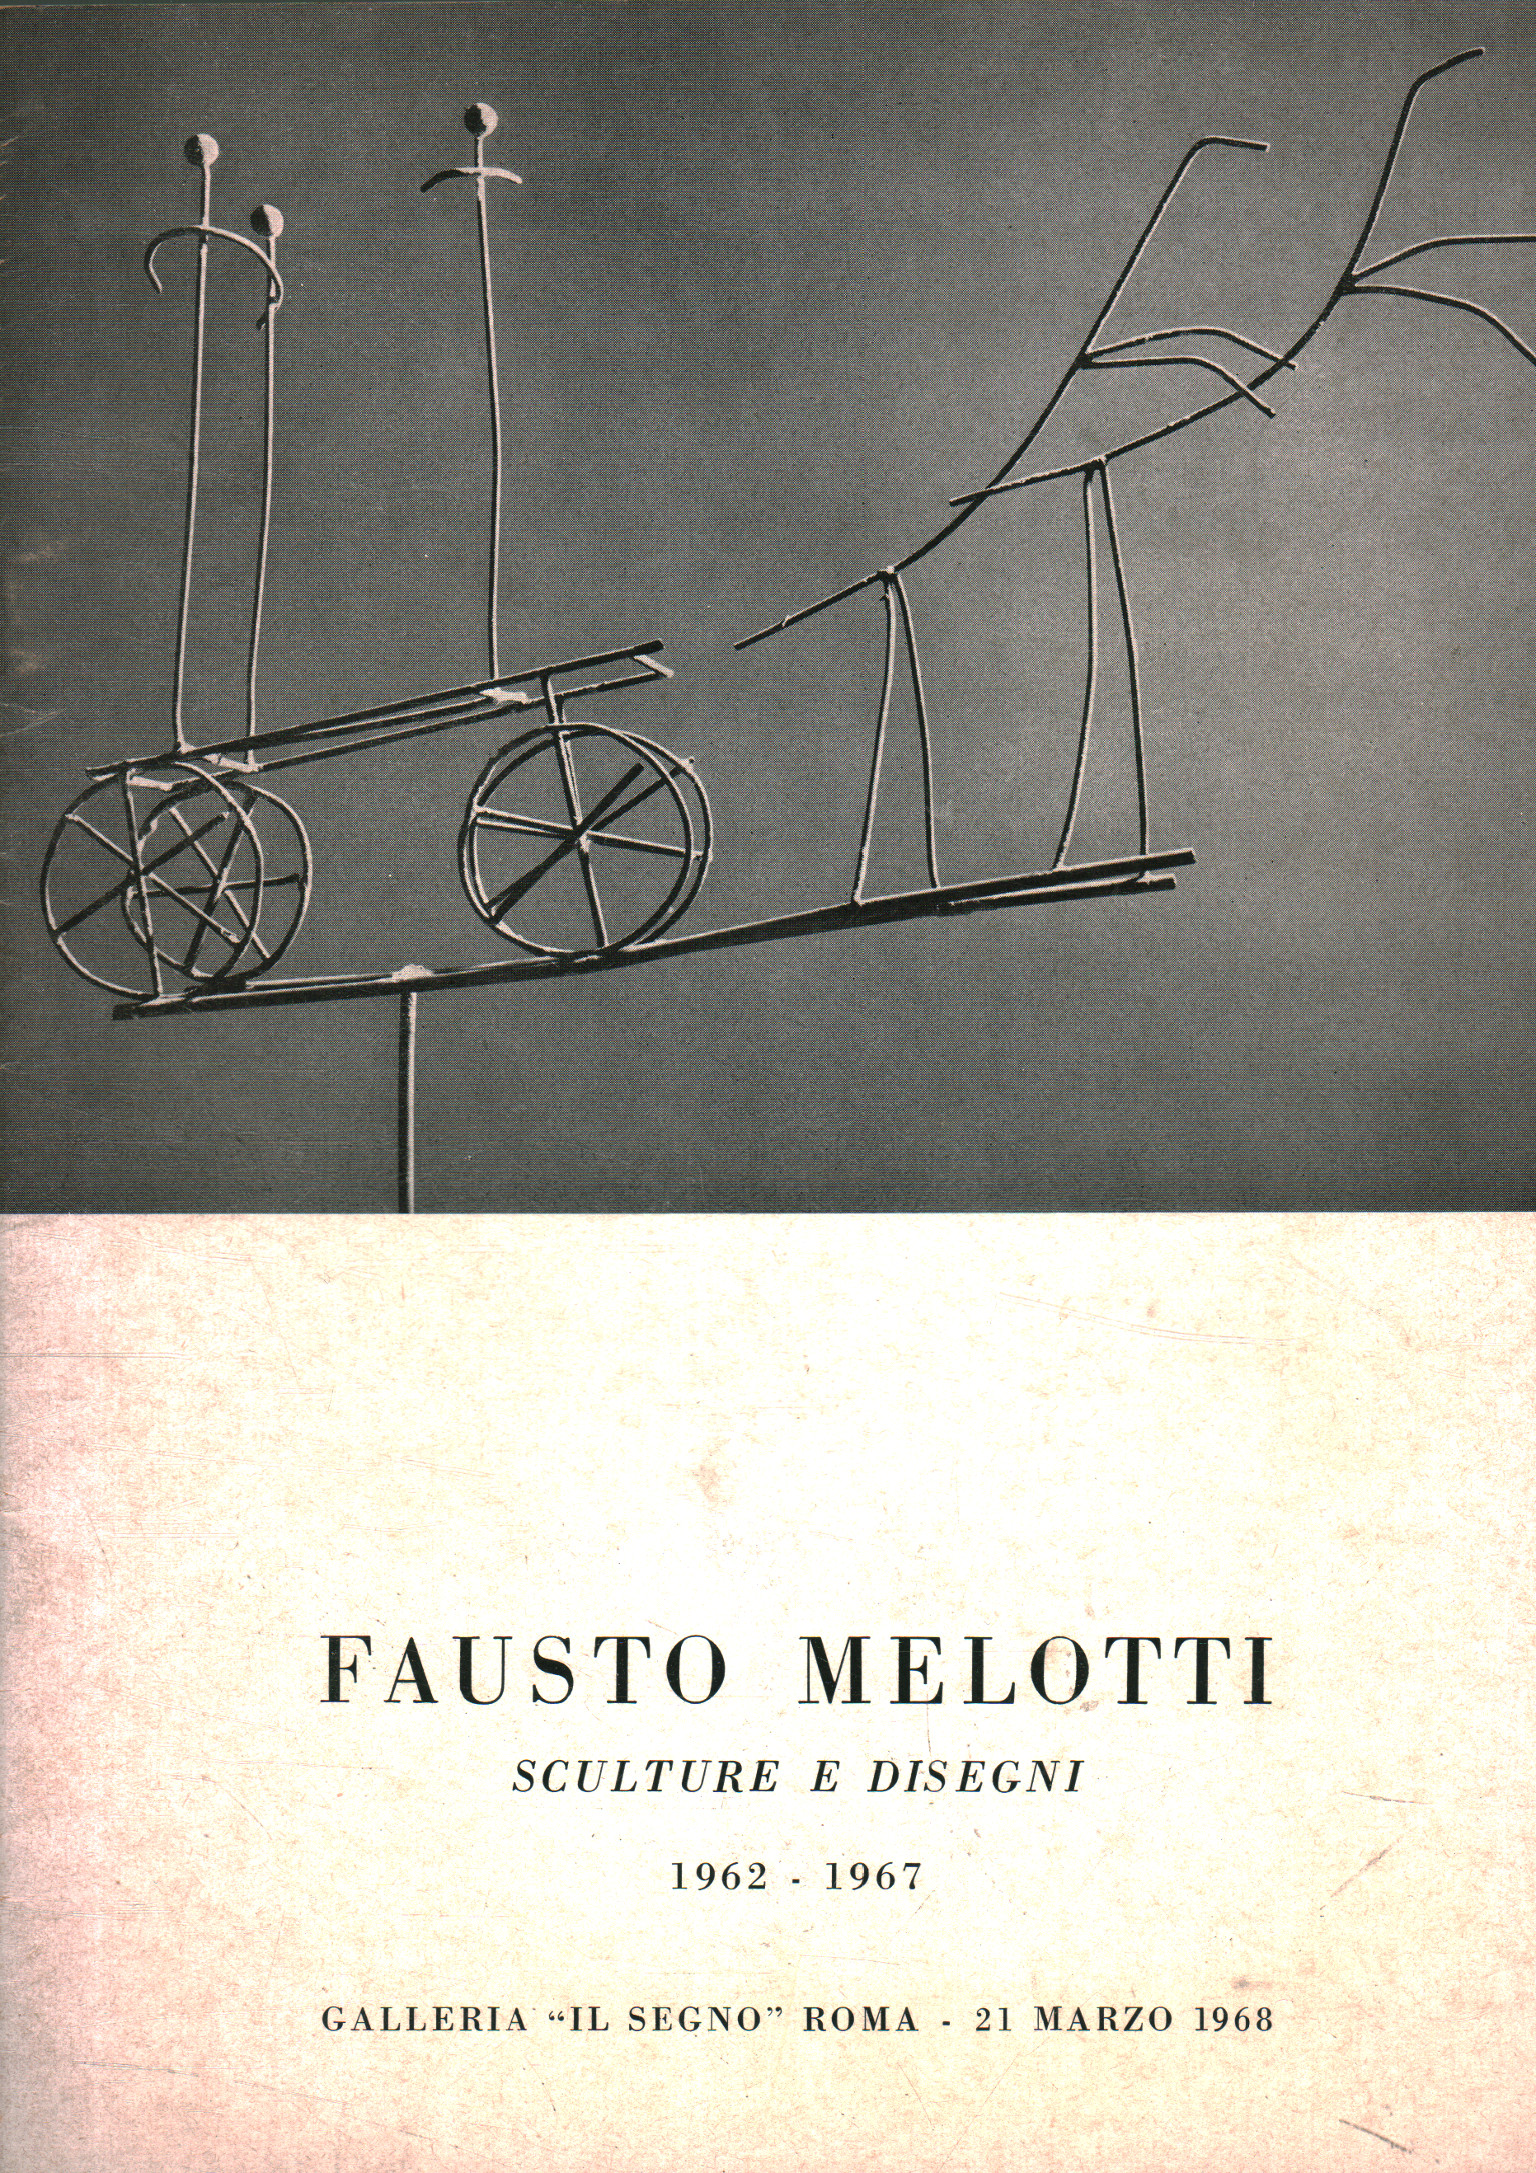 Fausto Melotti. Skulpturen und Zeichnungen 1962-